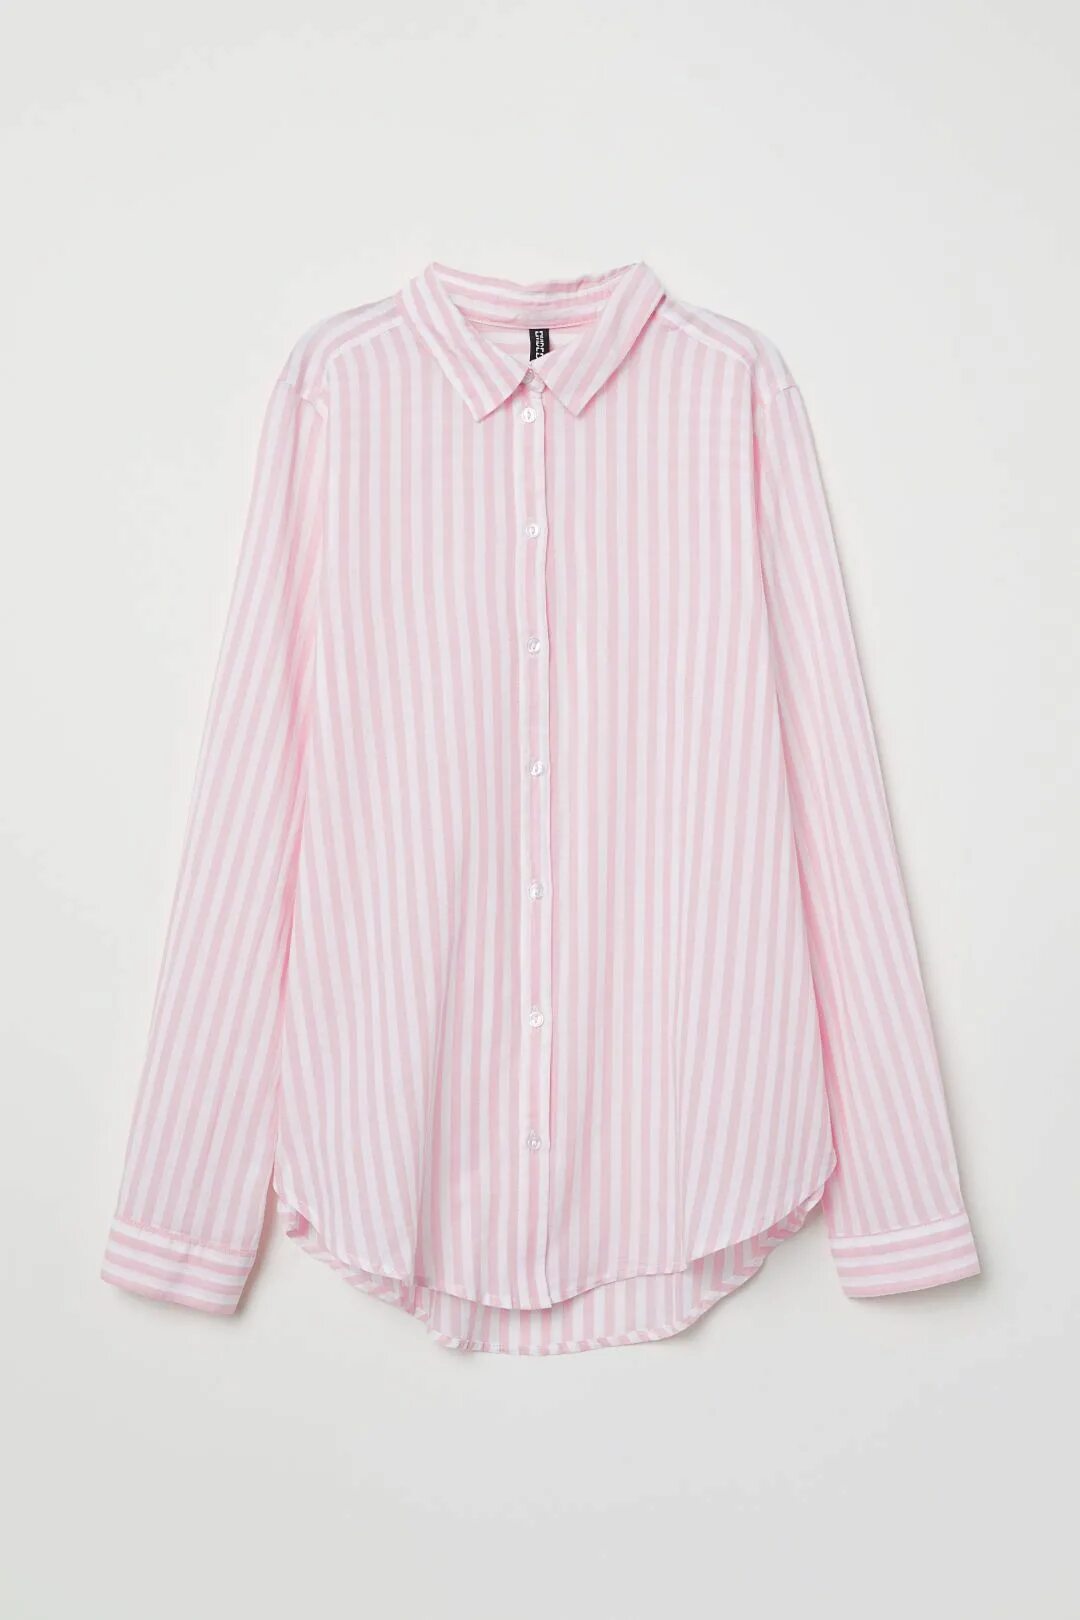 H M divided рубашка женская. Рубашка в розовую полоску женская. Белая рубашка в розовую полоску. Розовая рубашка в полоску